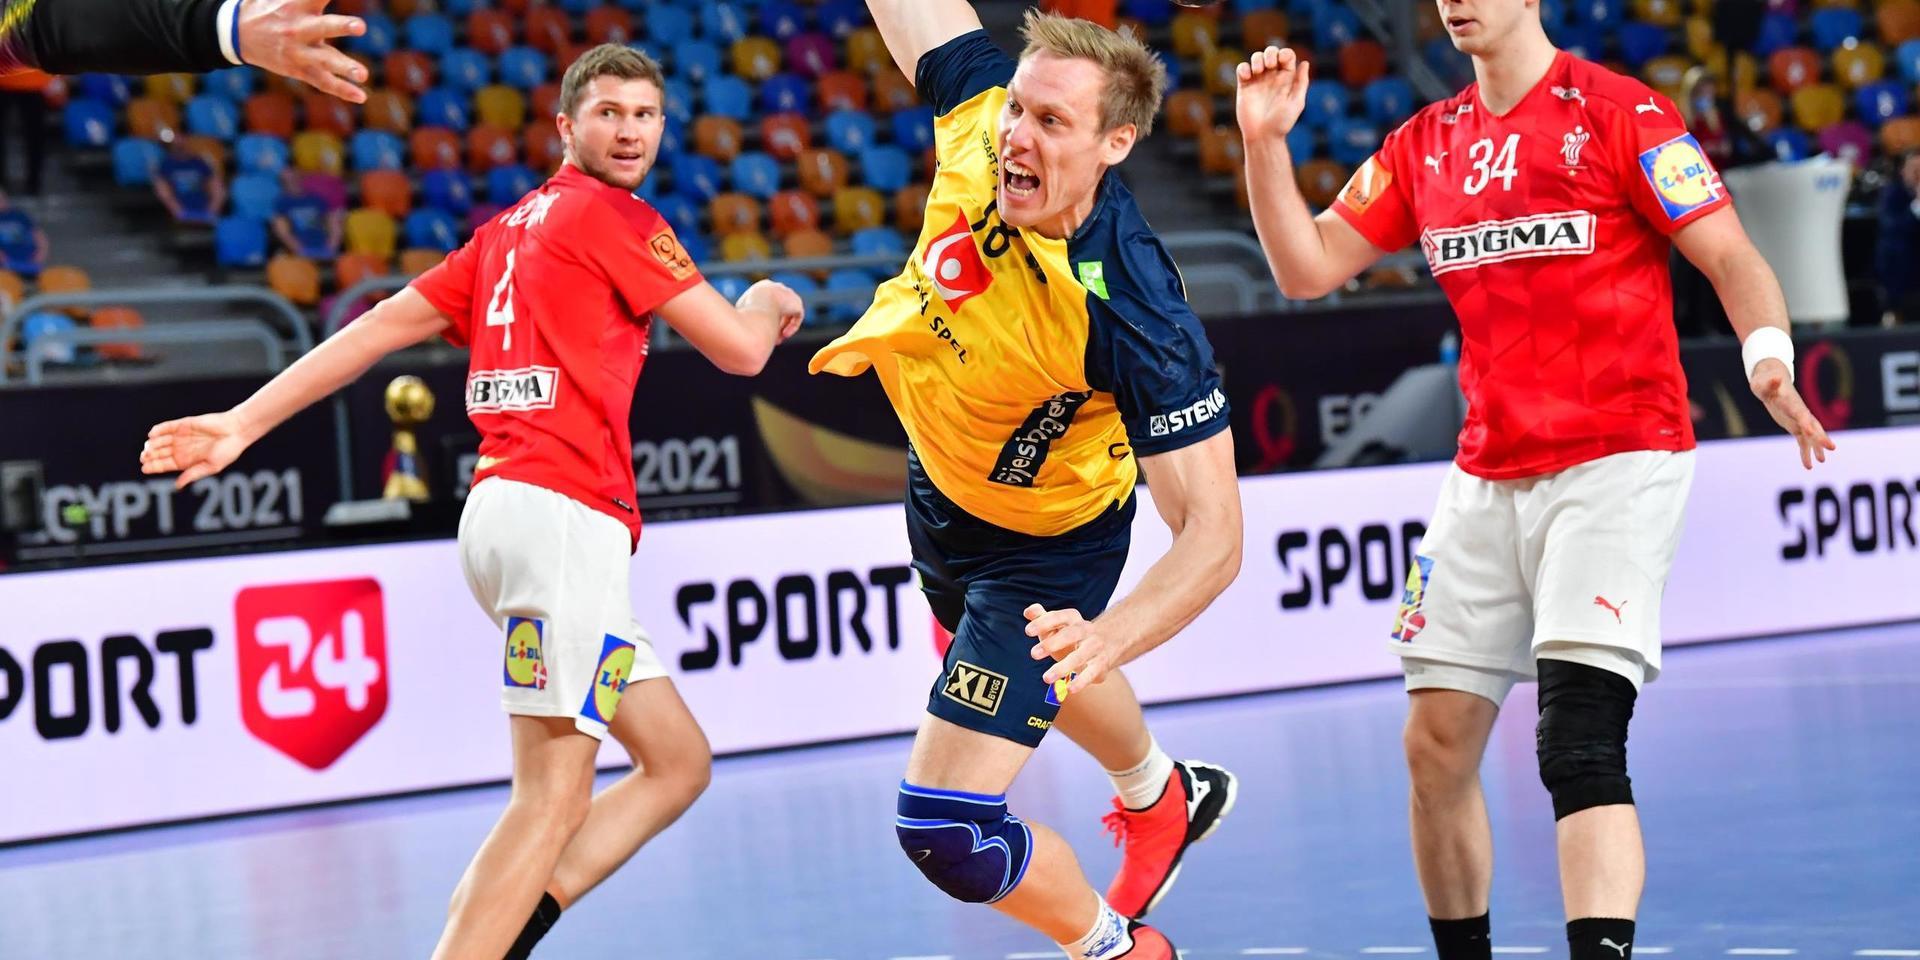 Sveriges Fredric Pettersson under VM-finalen mot Danmark tidigare i år. I sommarens OS i Tokyo får Pettersson och Sverige chans till revansch på danskarna redan i gruppspelet.